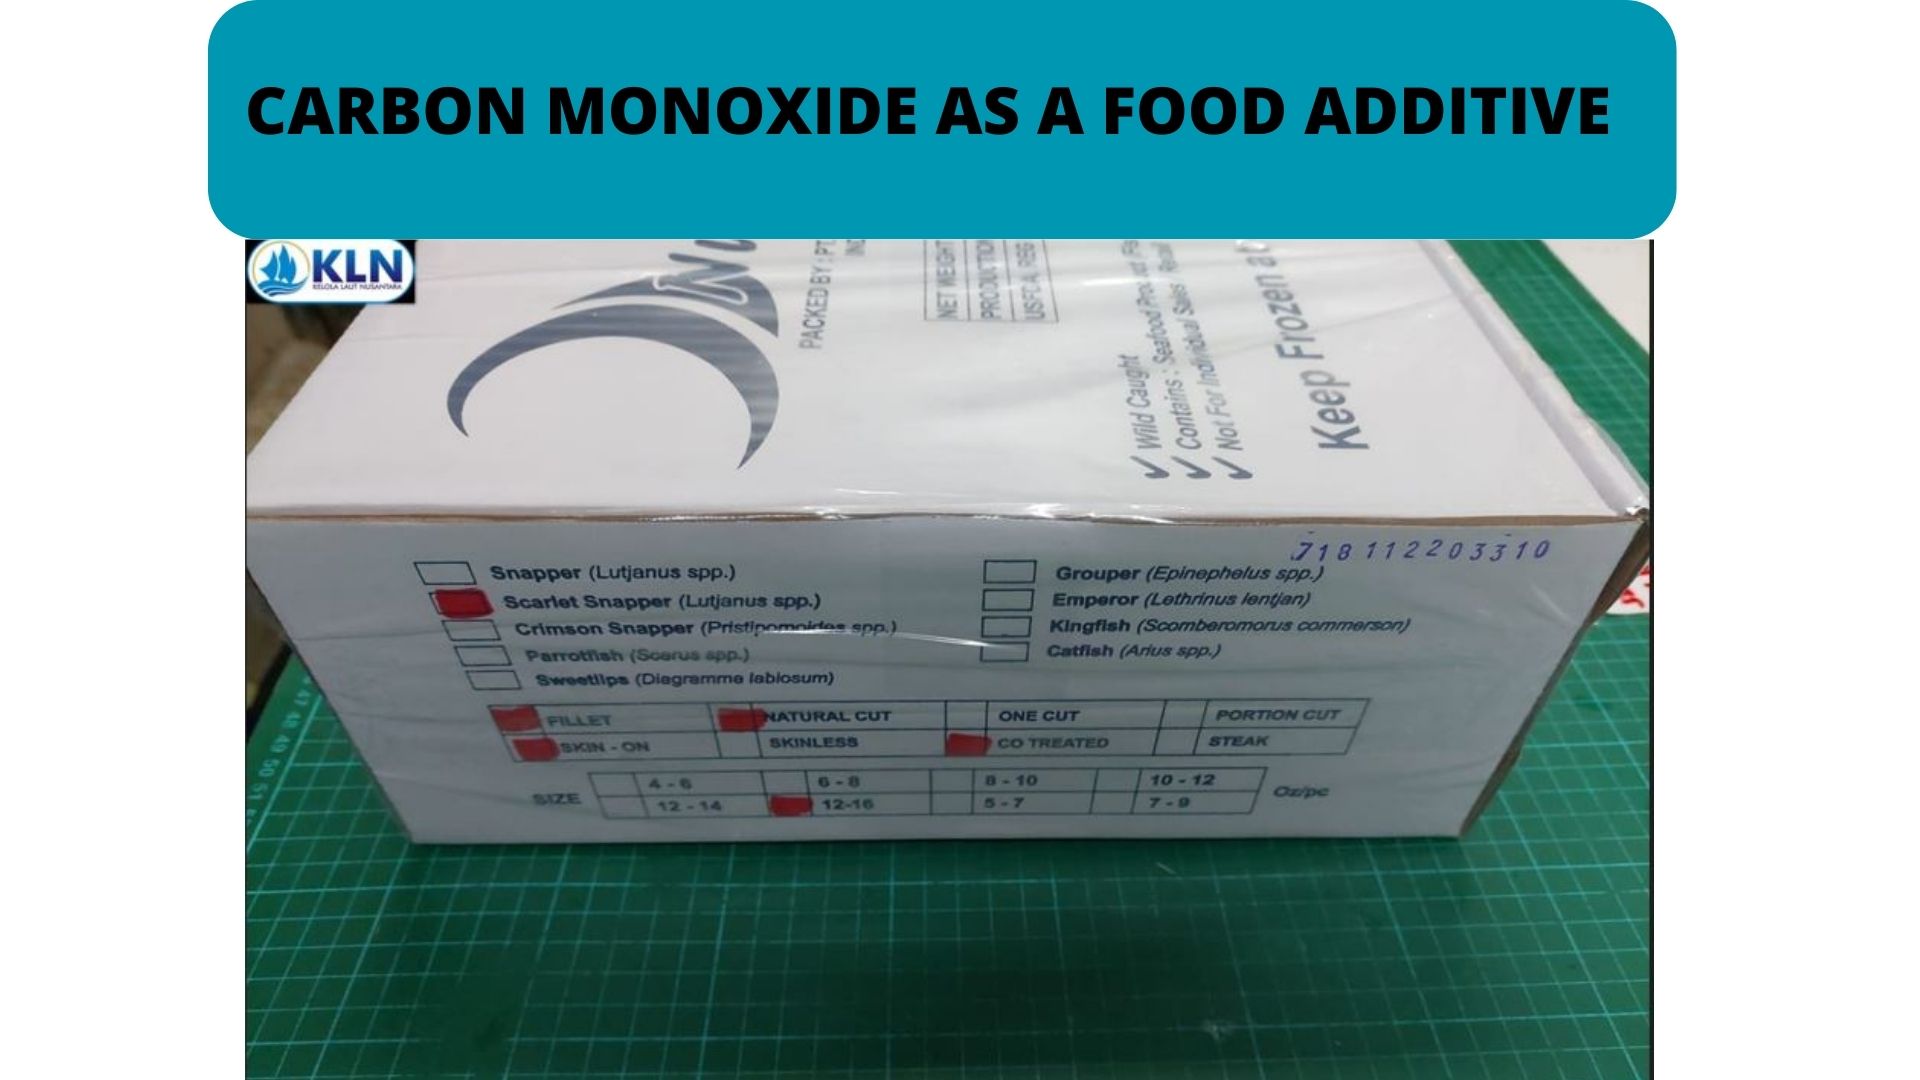 CARBON MONOXIDE AS A FOOD ADDITIVE